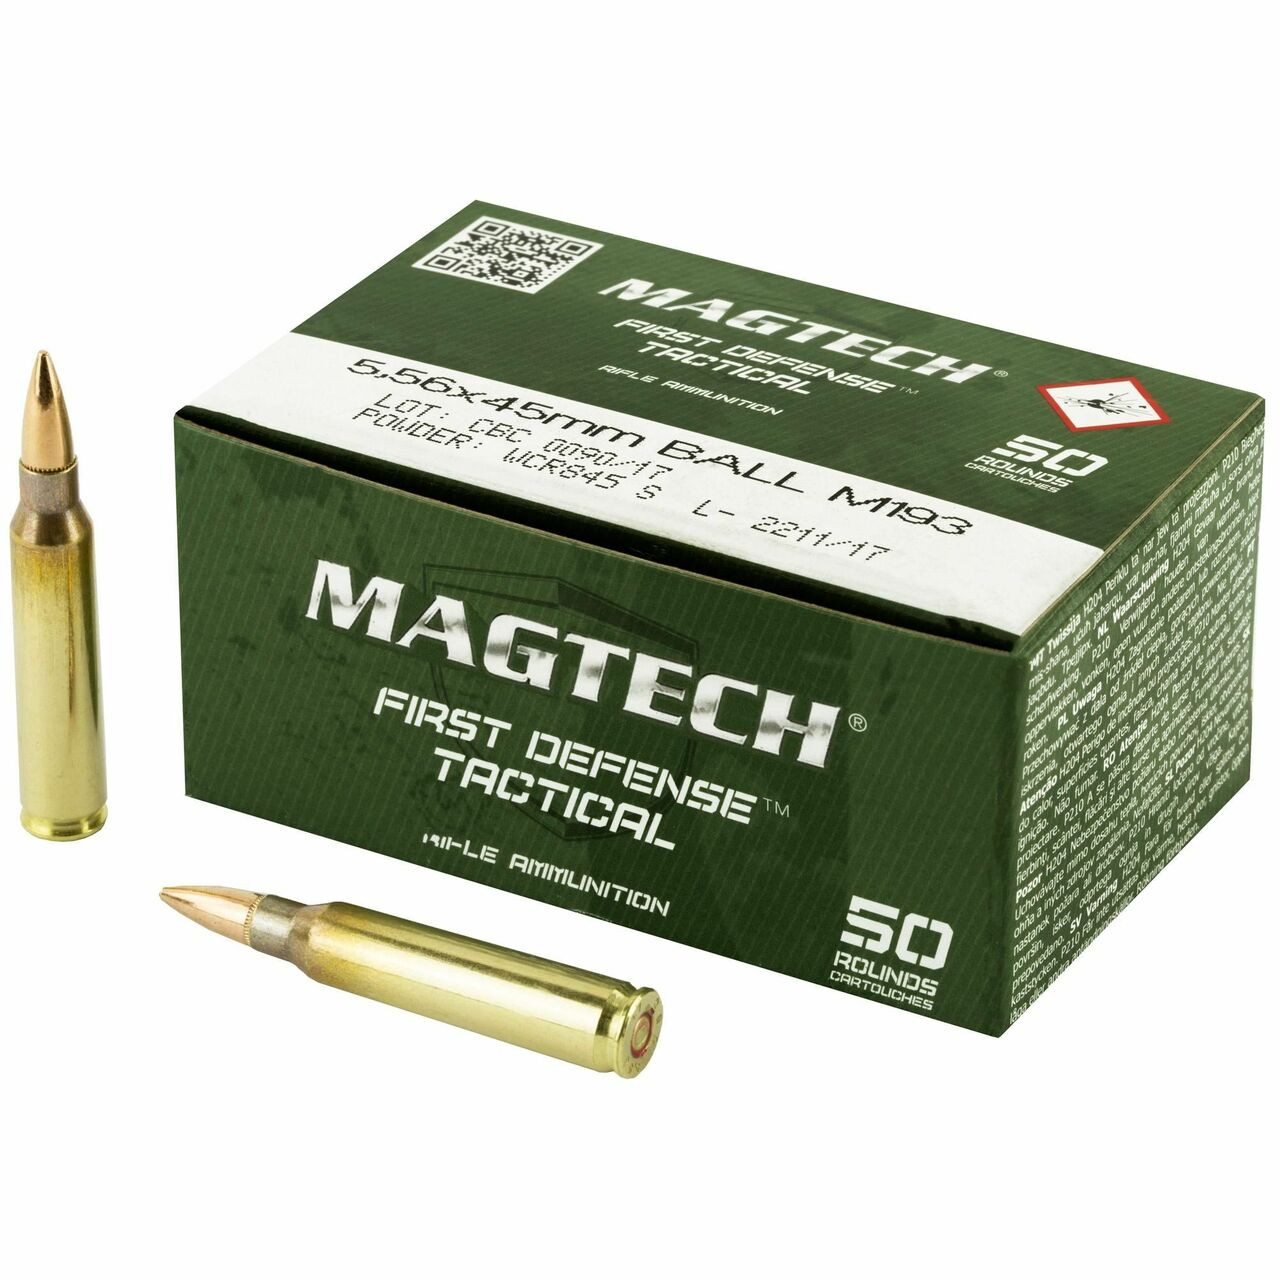 Magtech Ammunition - 5.56x45 MM - 55 Grain M193 Full Metal Jacket